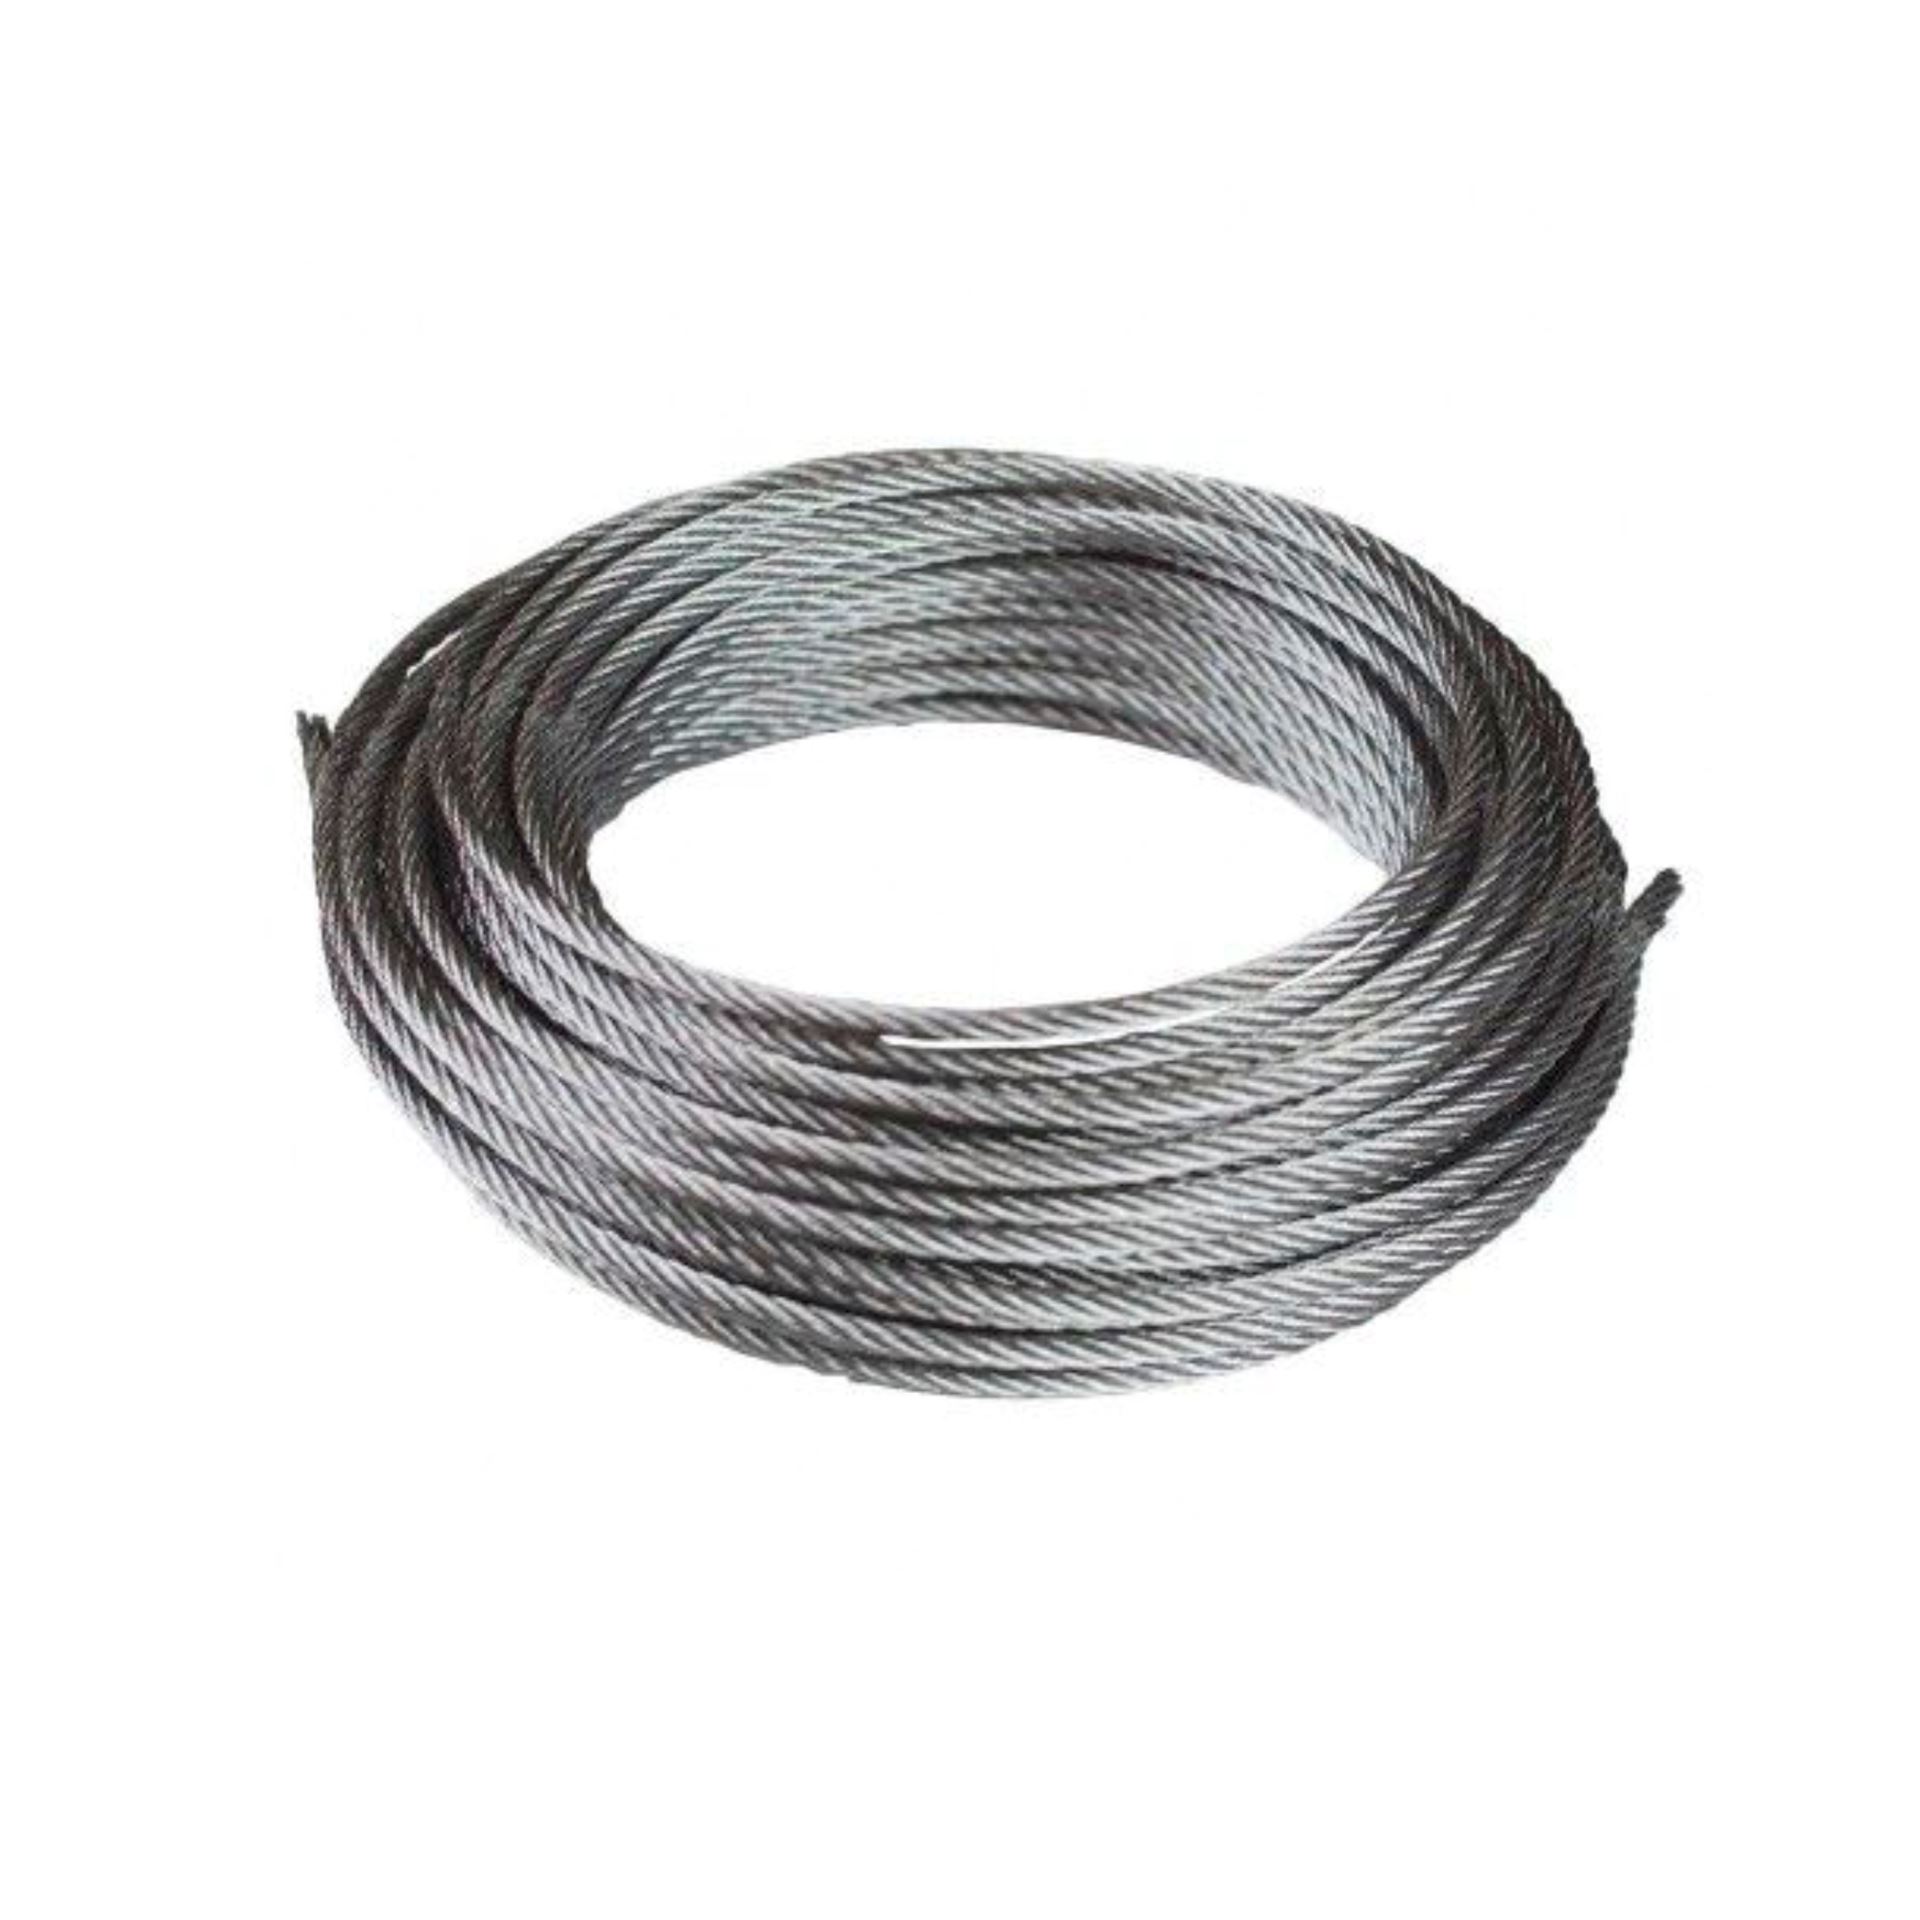 Cable acero galvanizado 16 mm 1 metro